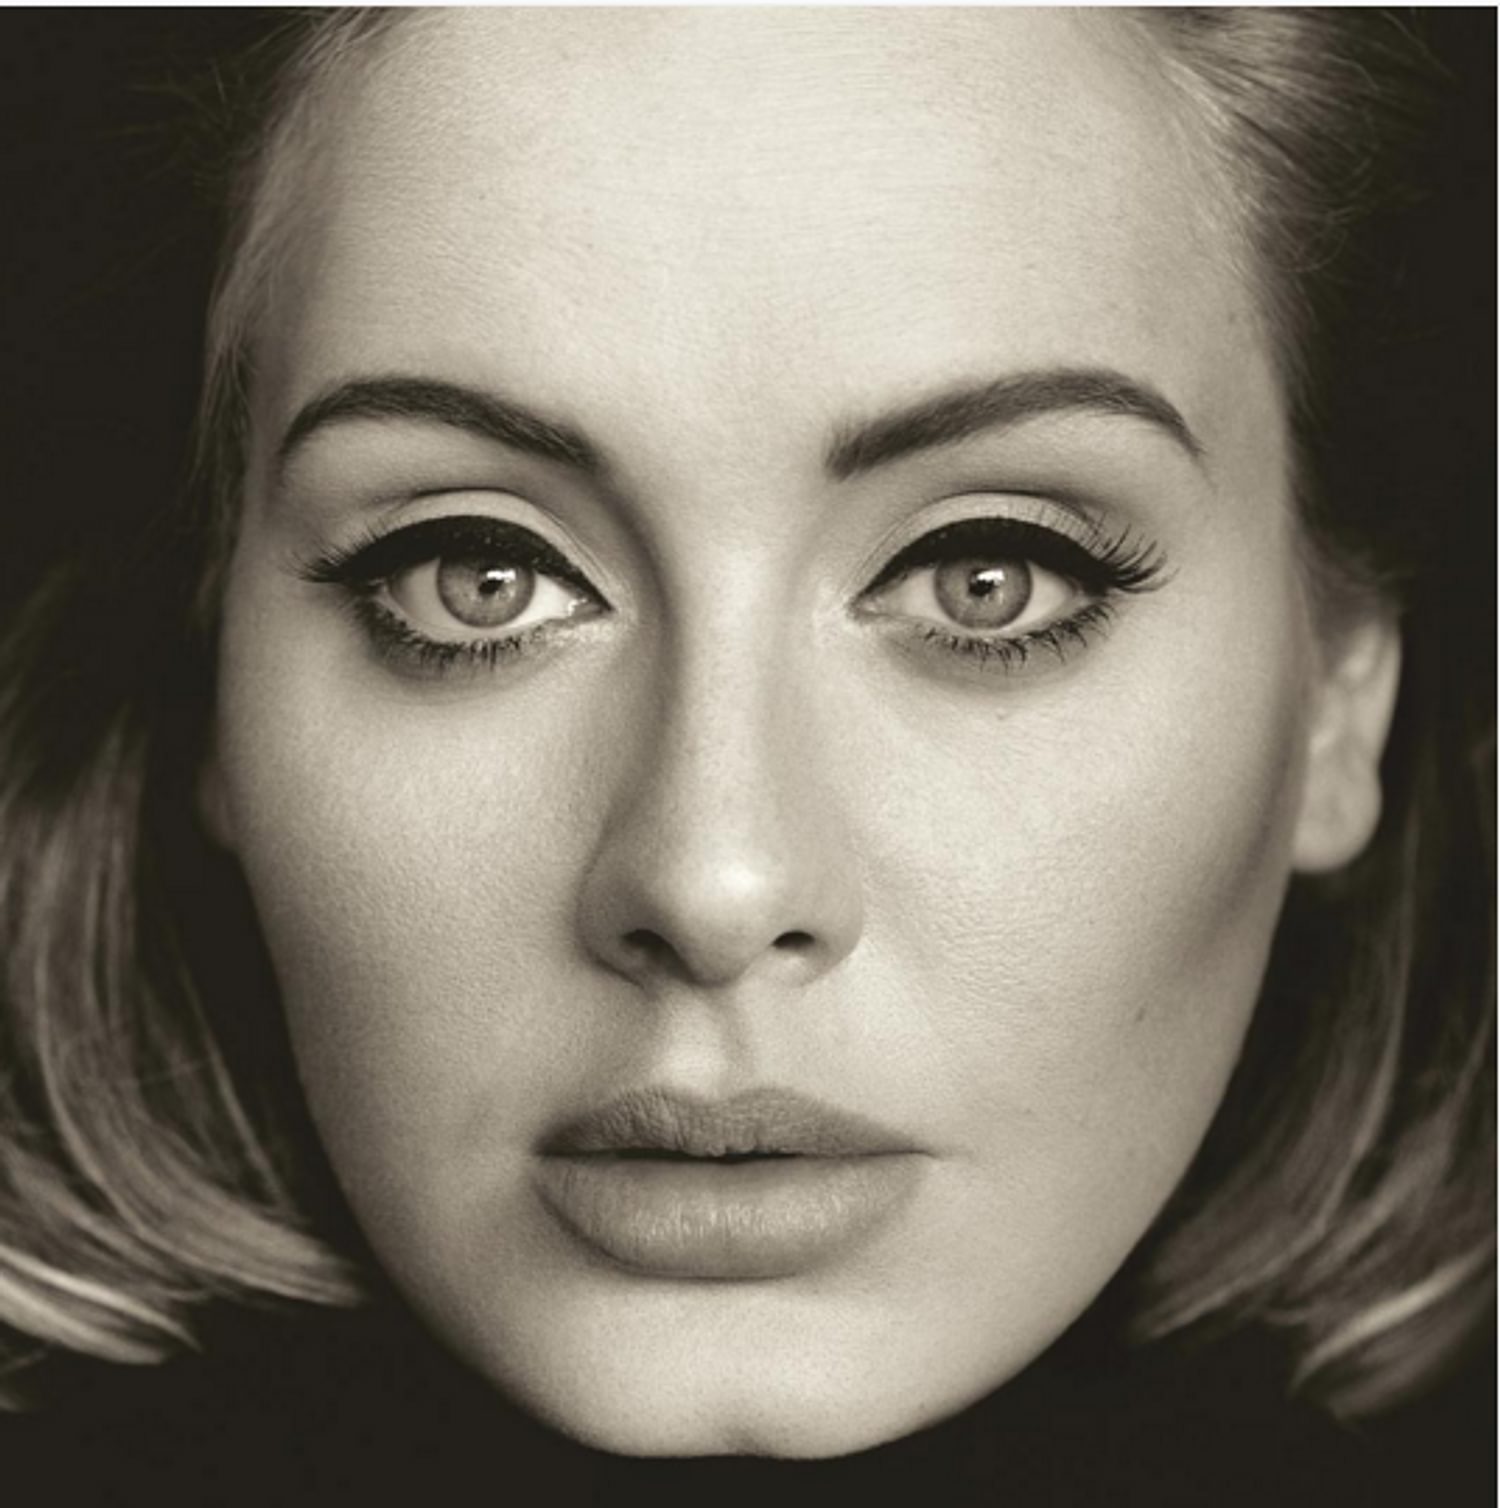 Adele reveals full details for '25' album